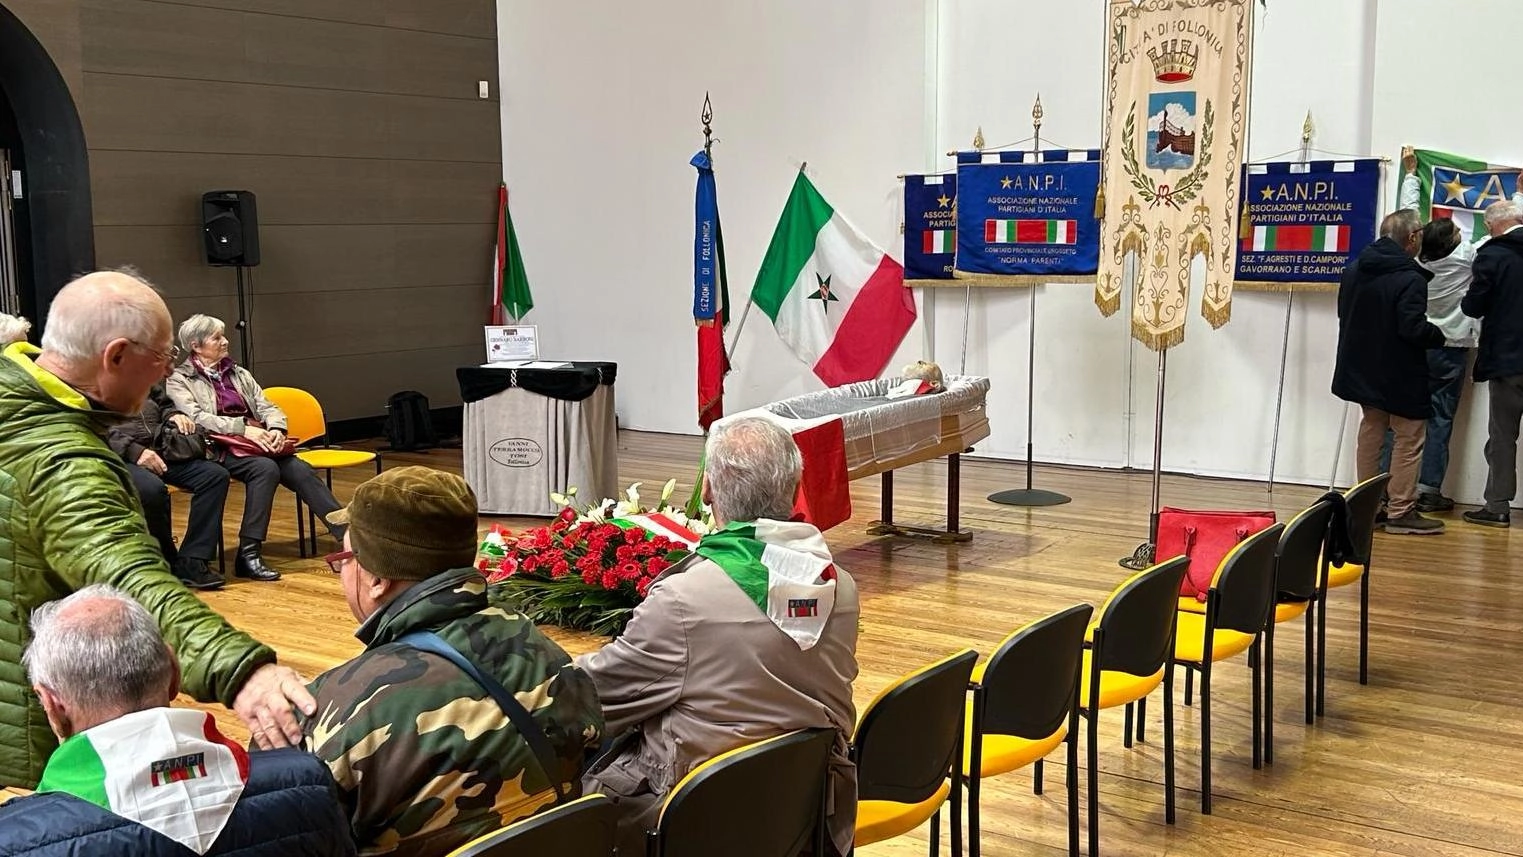 Oggi alle 11.30 alla "Sala Allegri" del Teatro Fonderia Leopolda avrà luogo la commemorazione a cura dell’Anpi. Poi la salma verrà cremata a Livorno.